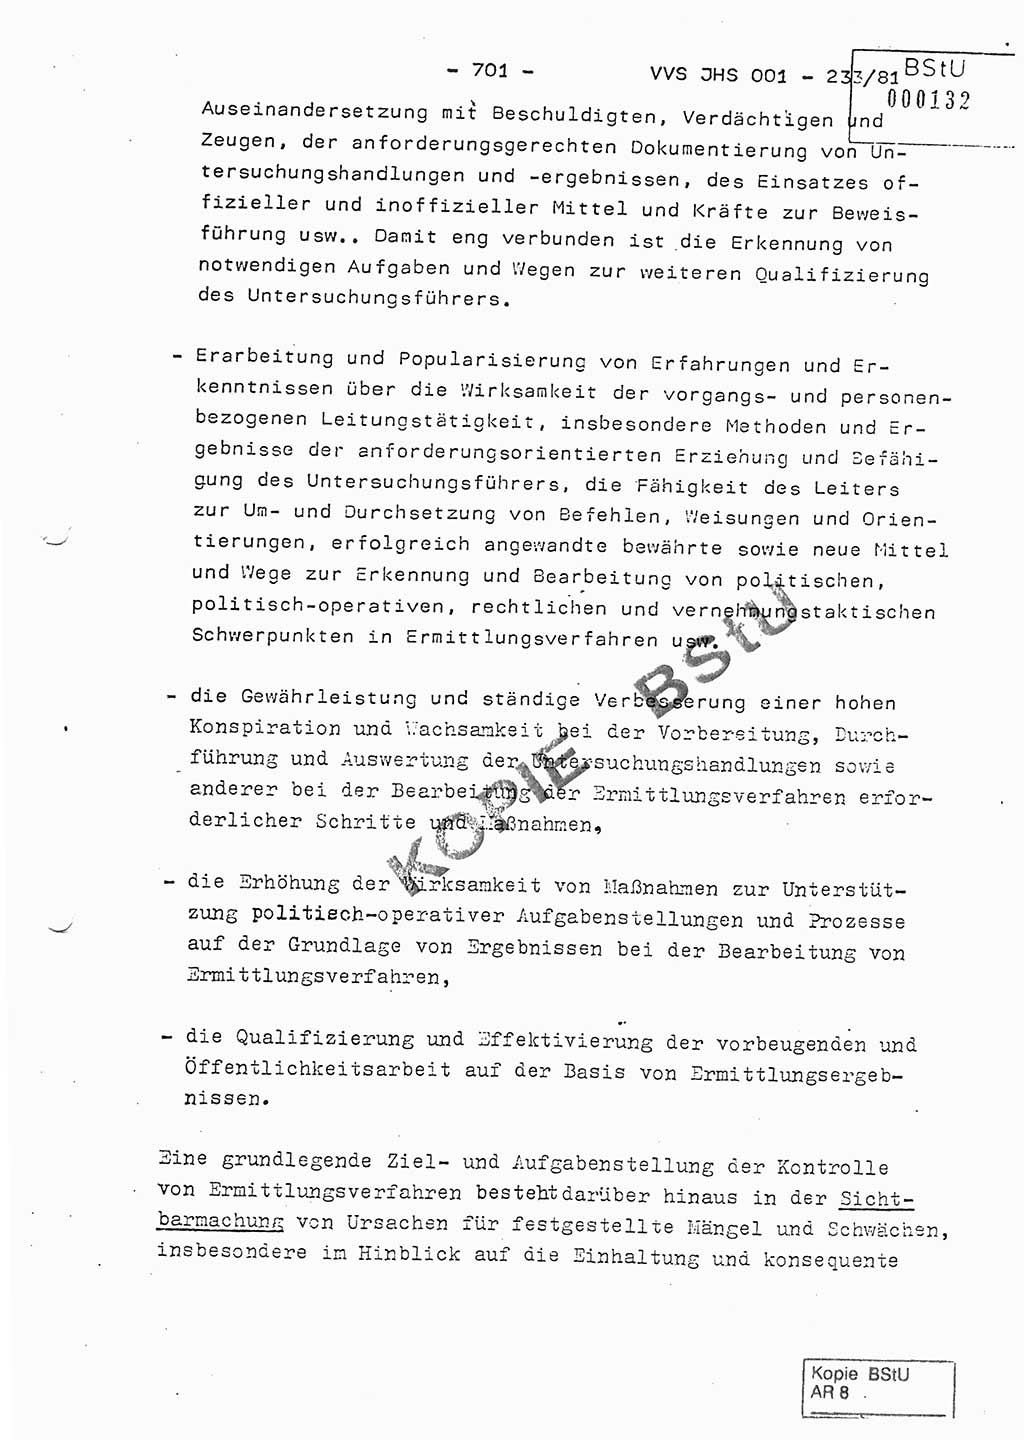 Dissertation Oberstleutnant Horst Zank (JHS), Oberstleutnant Dr. Karl-Heinz Knoblauch (JHS), Oberstleutnant Gustav-Adolf Kowalewski (HA Ⅸ), Oberstleutnant Wolfgang Plötner (HA Ⅸ), Ministerium für Staatssicherheit (MfS) [Deutsche Demokratische Republik (DDR)], Juristische Hochschule (JHS), Vertrauliche Verschlußsache (VVS) o001-233/81, Potsdam 1981, Blatt 701 (Diss. MfS DDR JHS VVS o001-233/81 1981, Bl. 701)